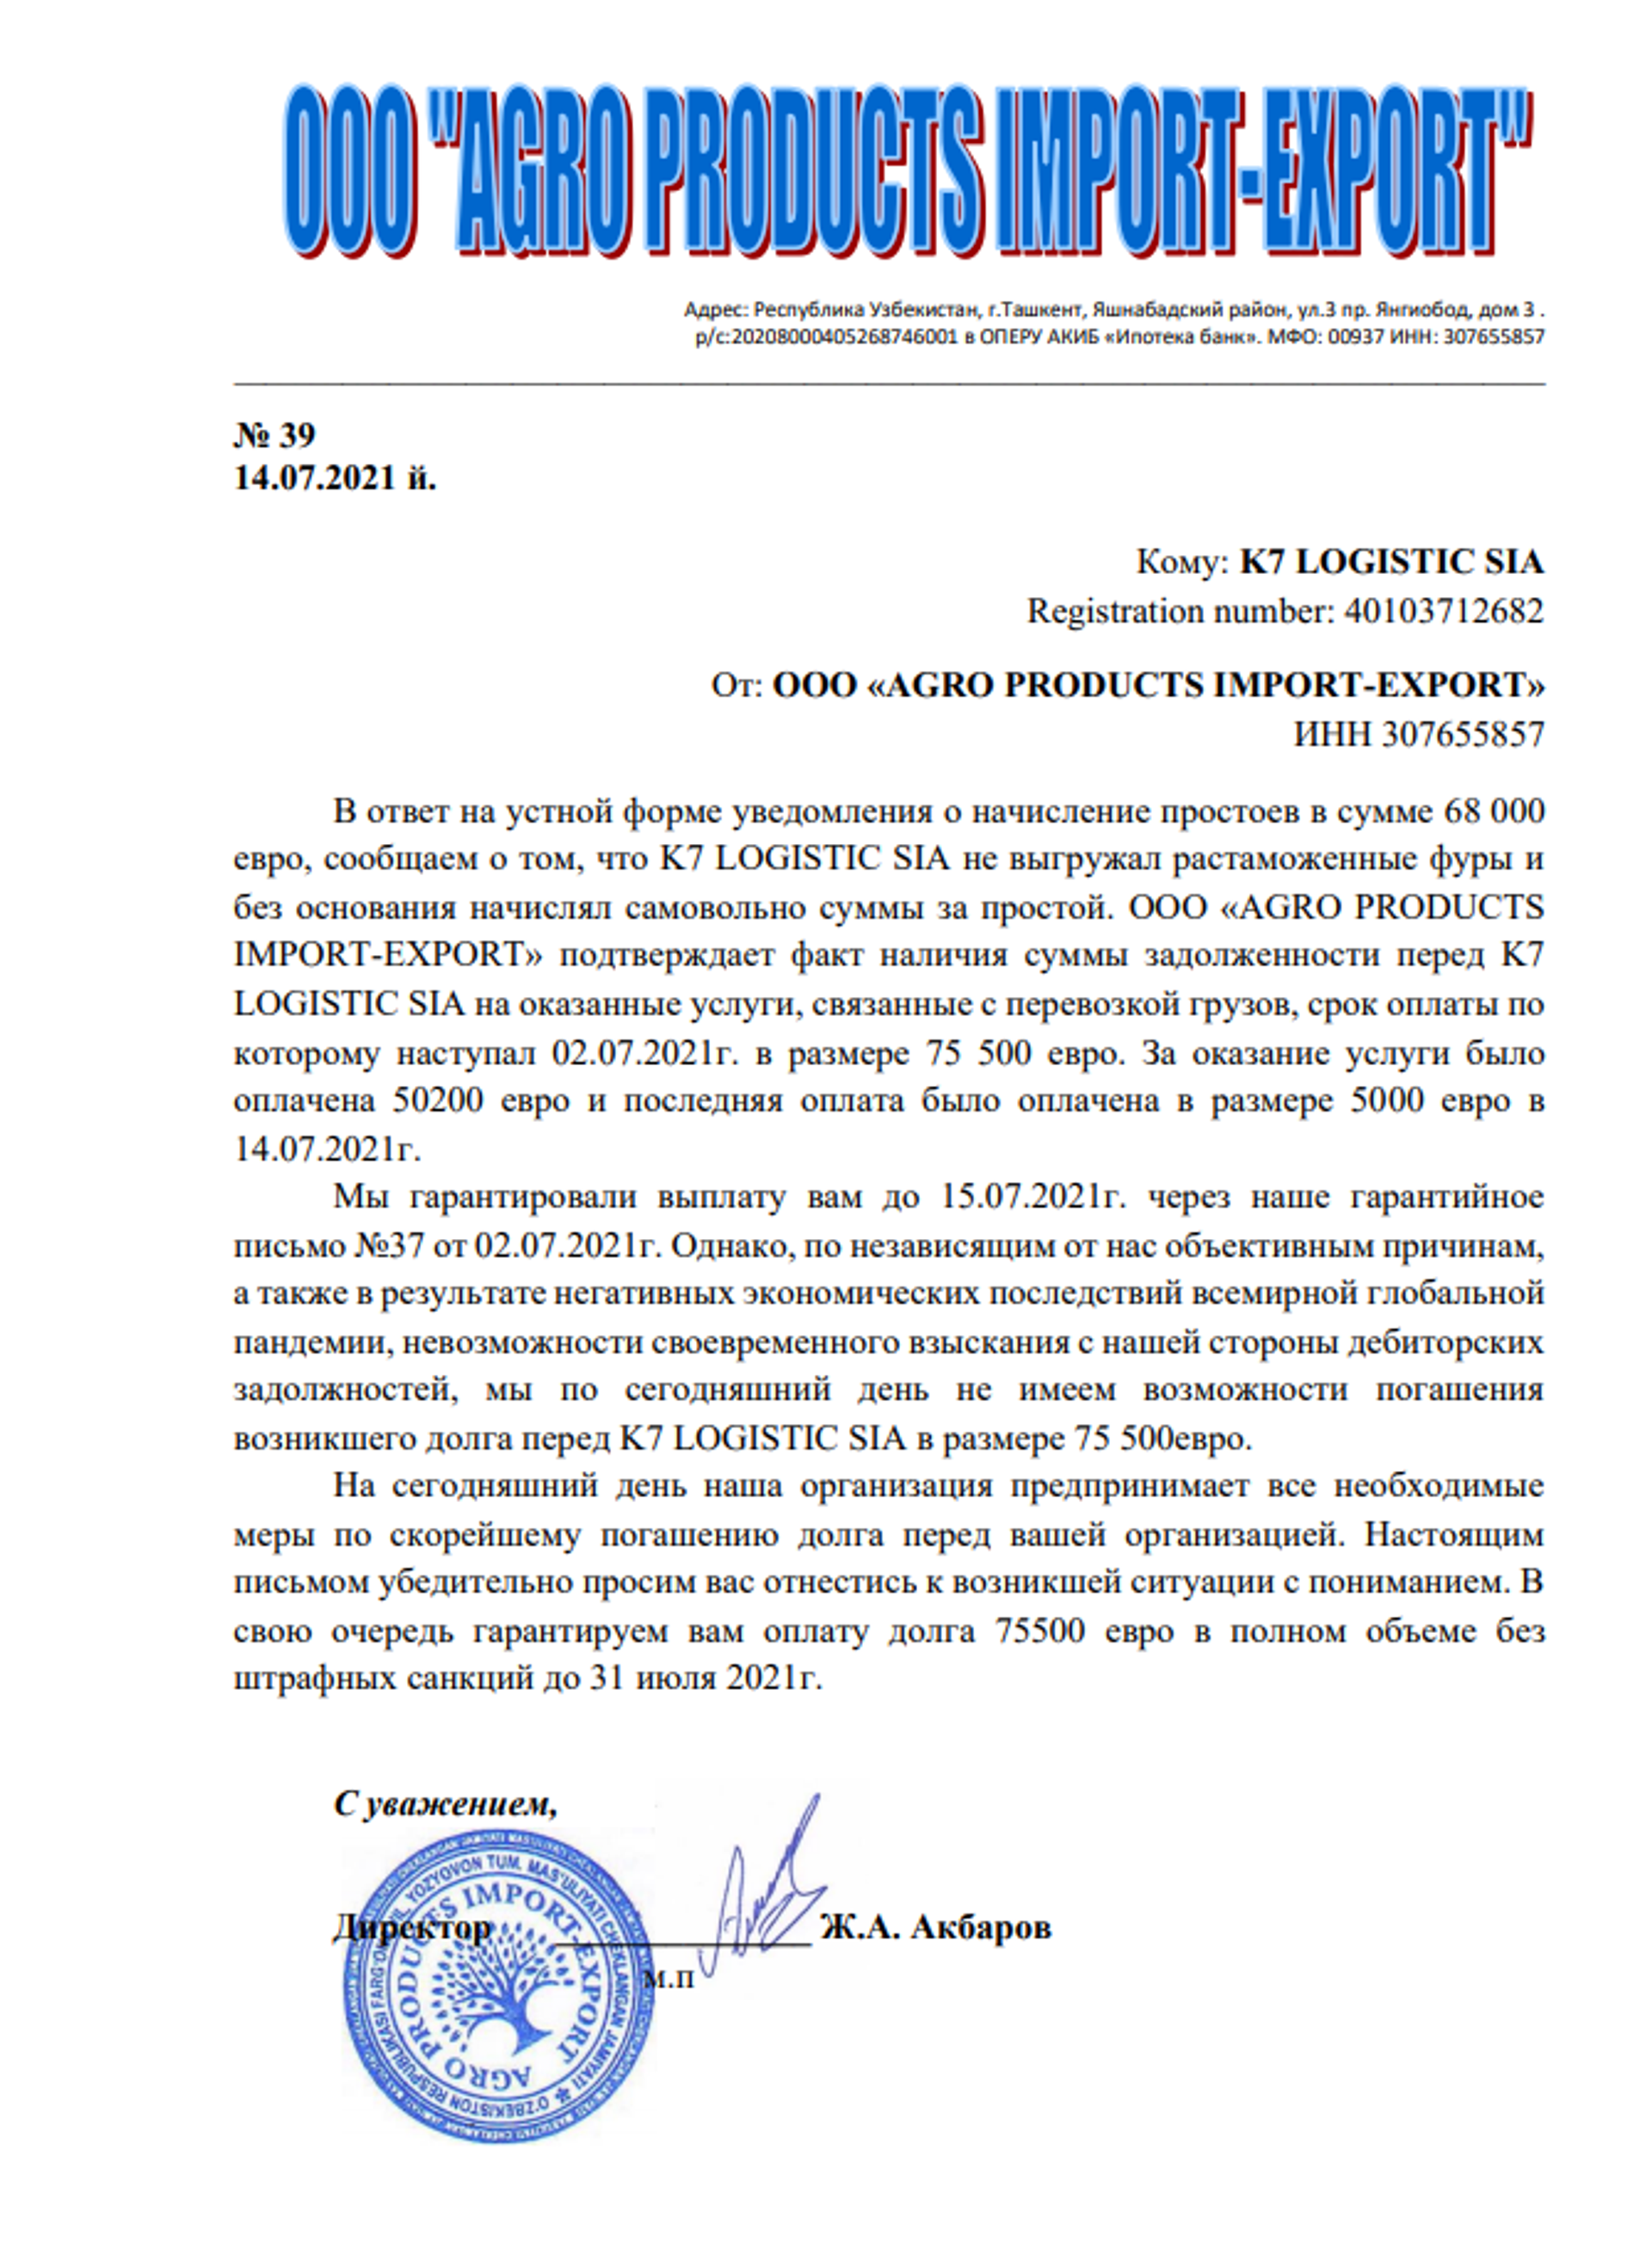 Официальное письмо от компании Агро Продукт Импорт-Экспорт - Sputnik Узбекистан, 1920, 15.07.2021